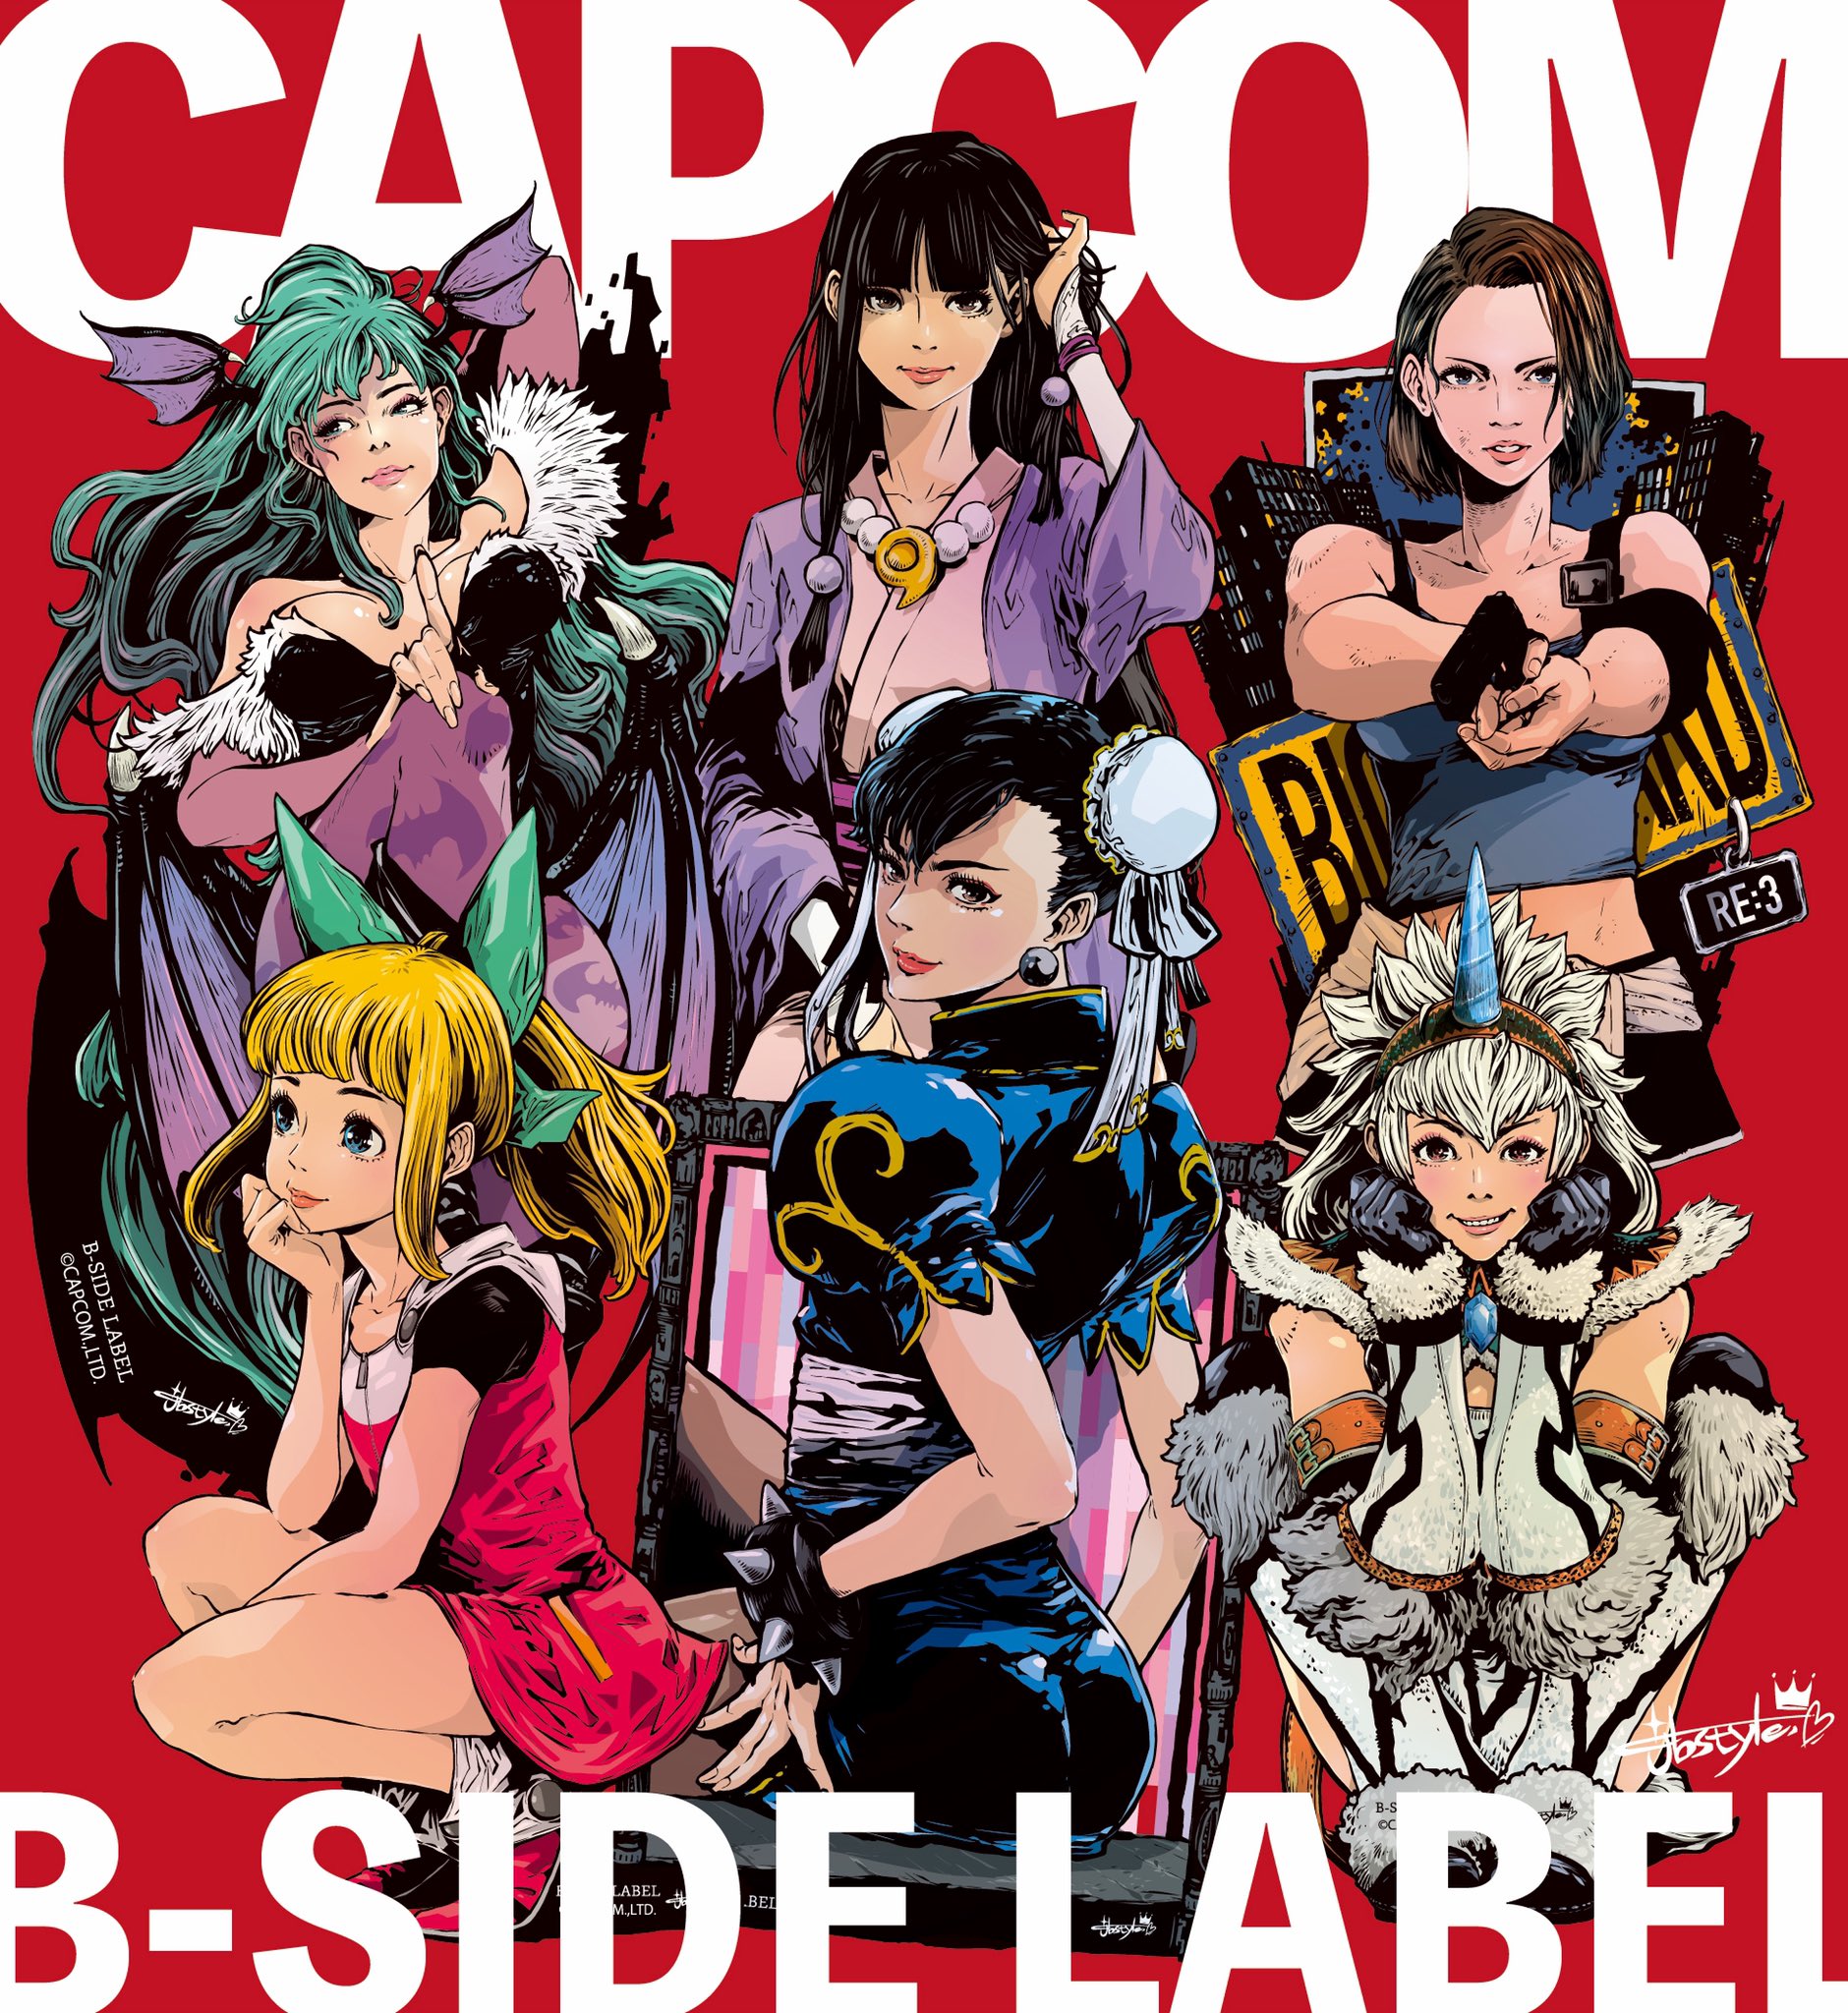 jbstyle-capcom-girls-side-label-2020.jpg